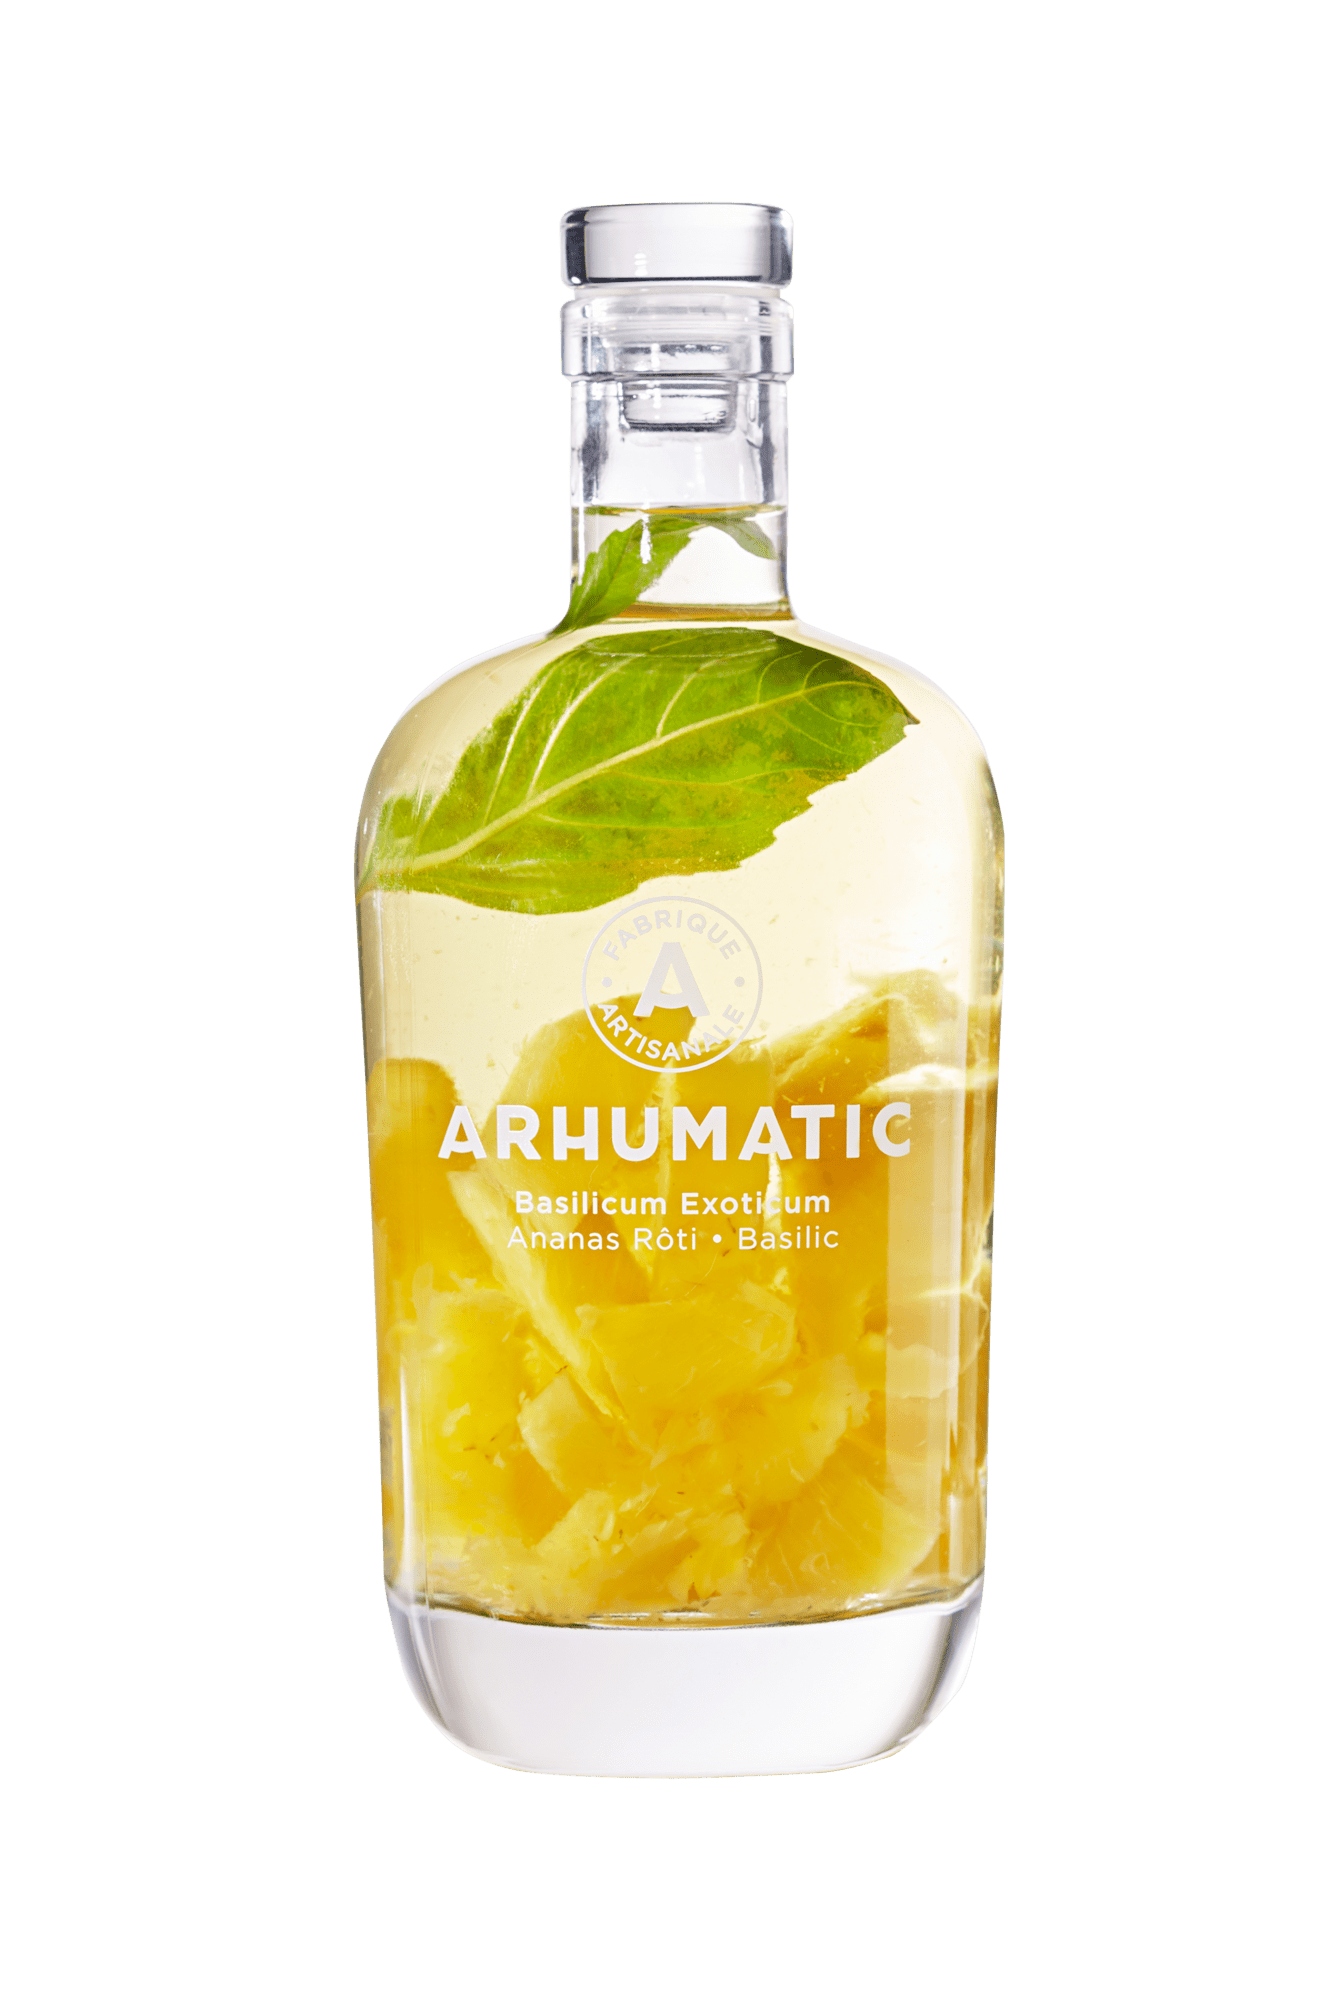 7 + 1 | Arhumatic Ananas Rôti, Basilic